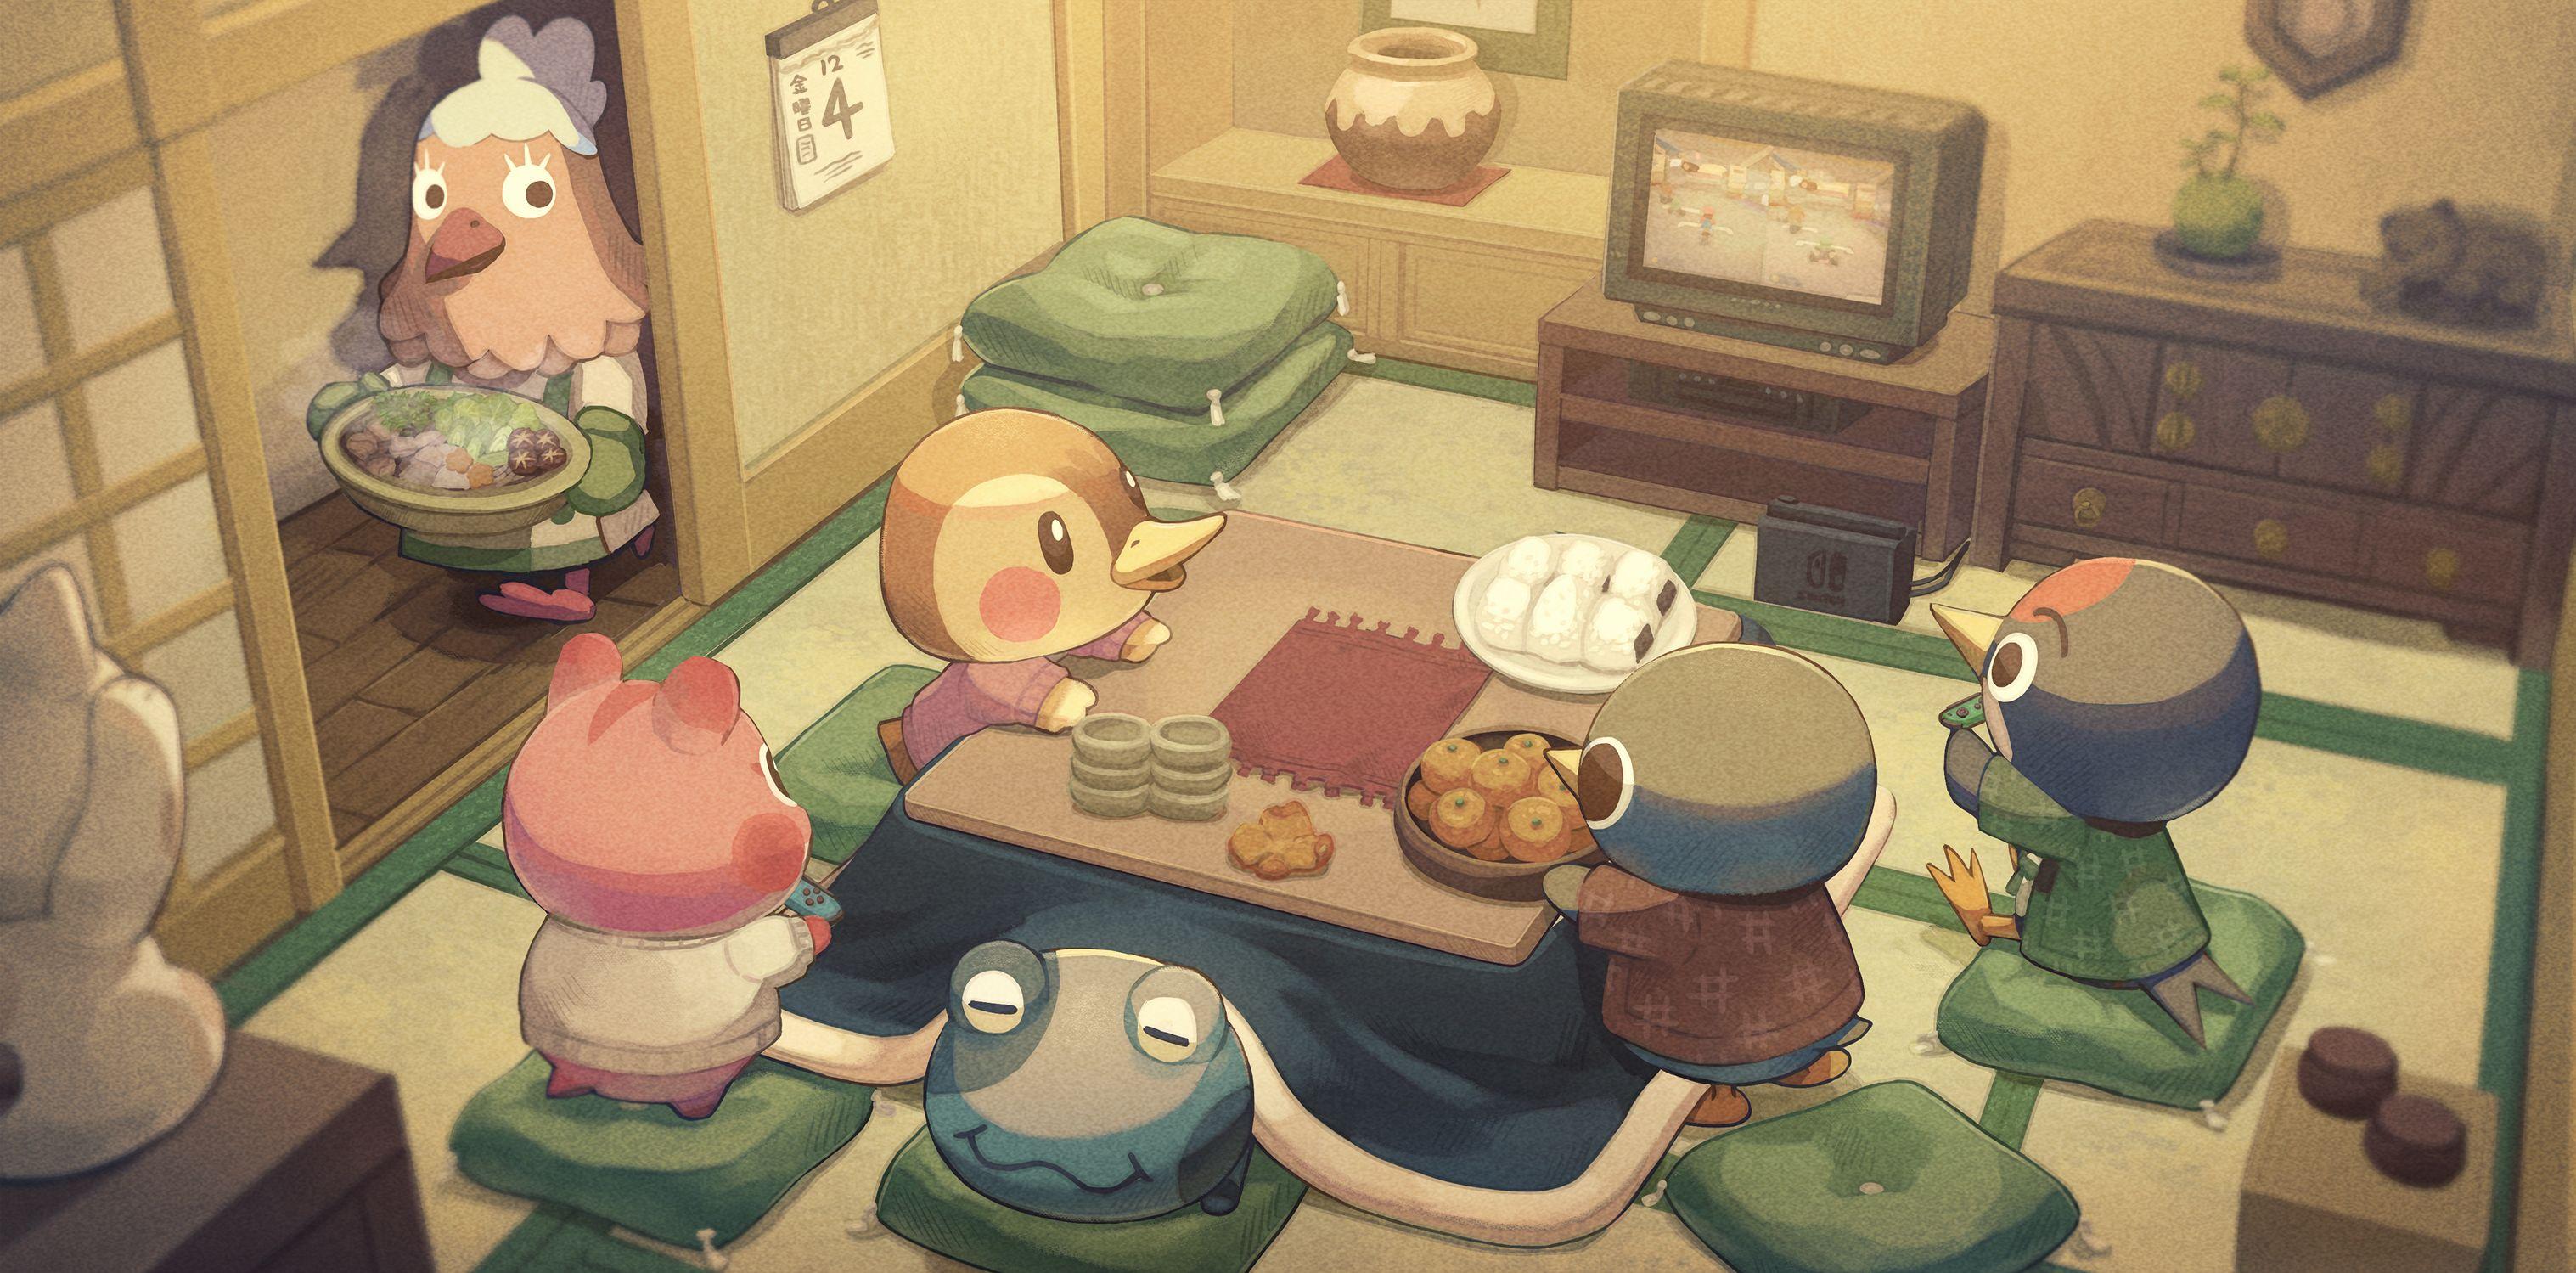 Ava Animal Crossing Wallpaper For Mobile Phone